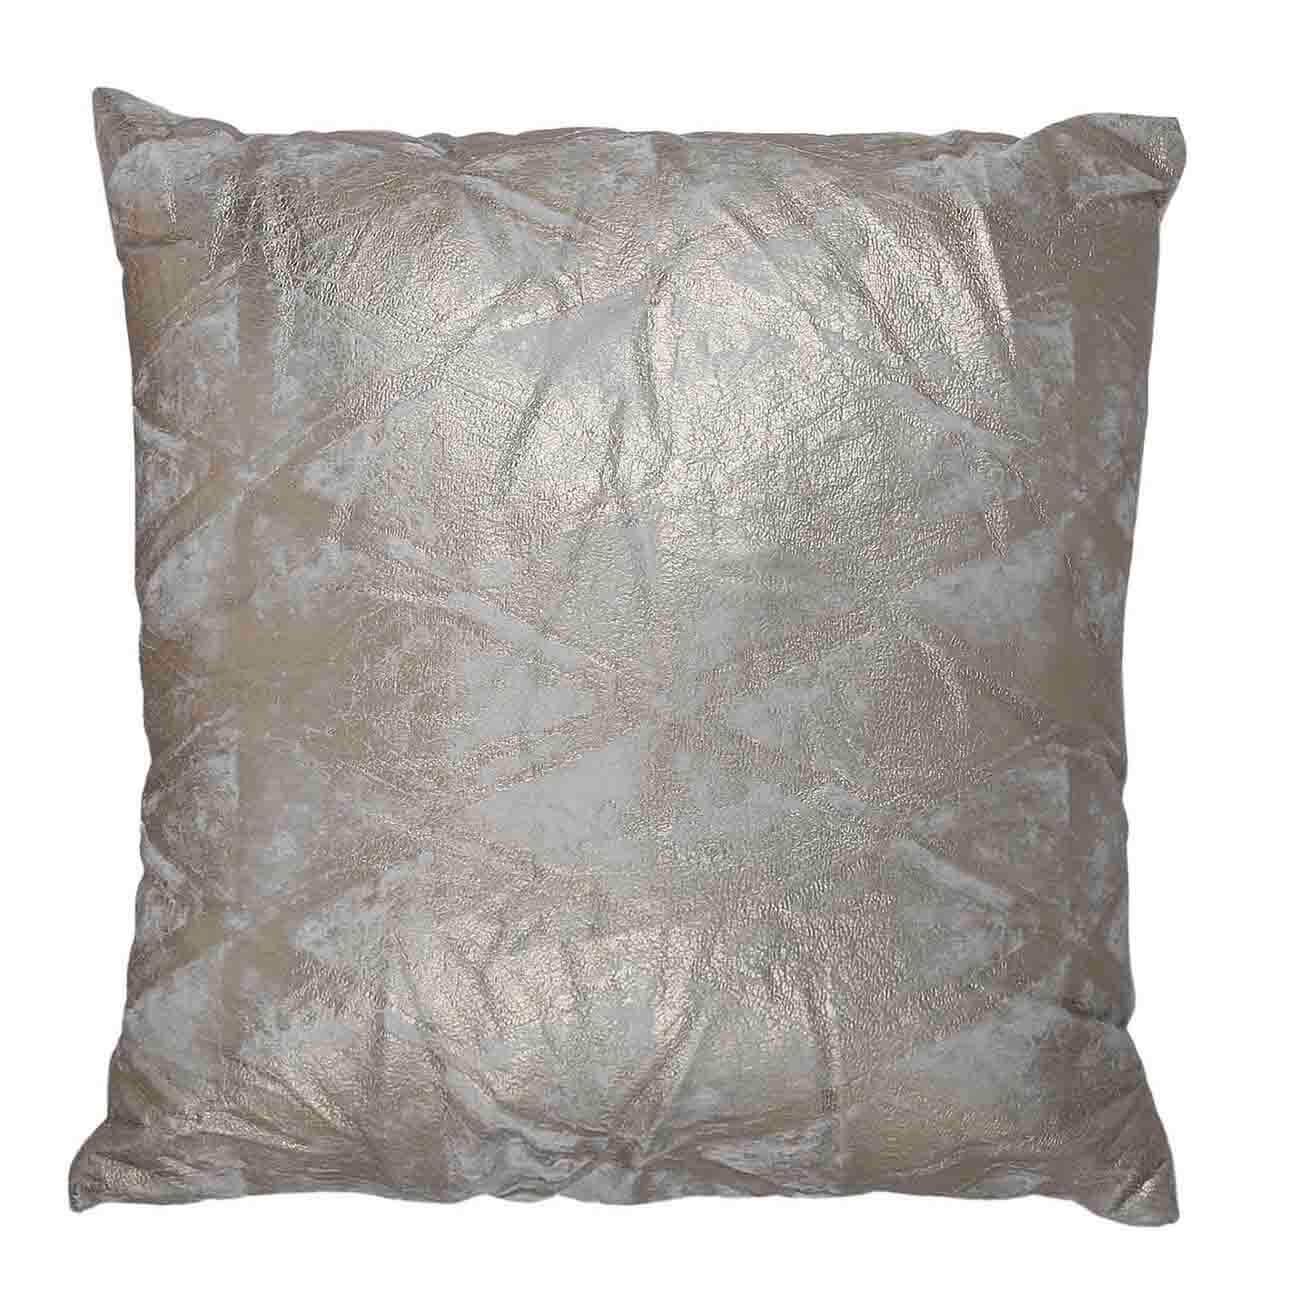 Decorative pillow, 45x45 cm, corduroy, beige, Gold dusting, Deco textile изображение № 1